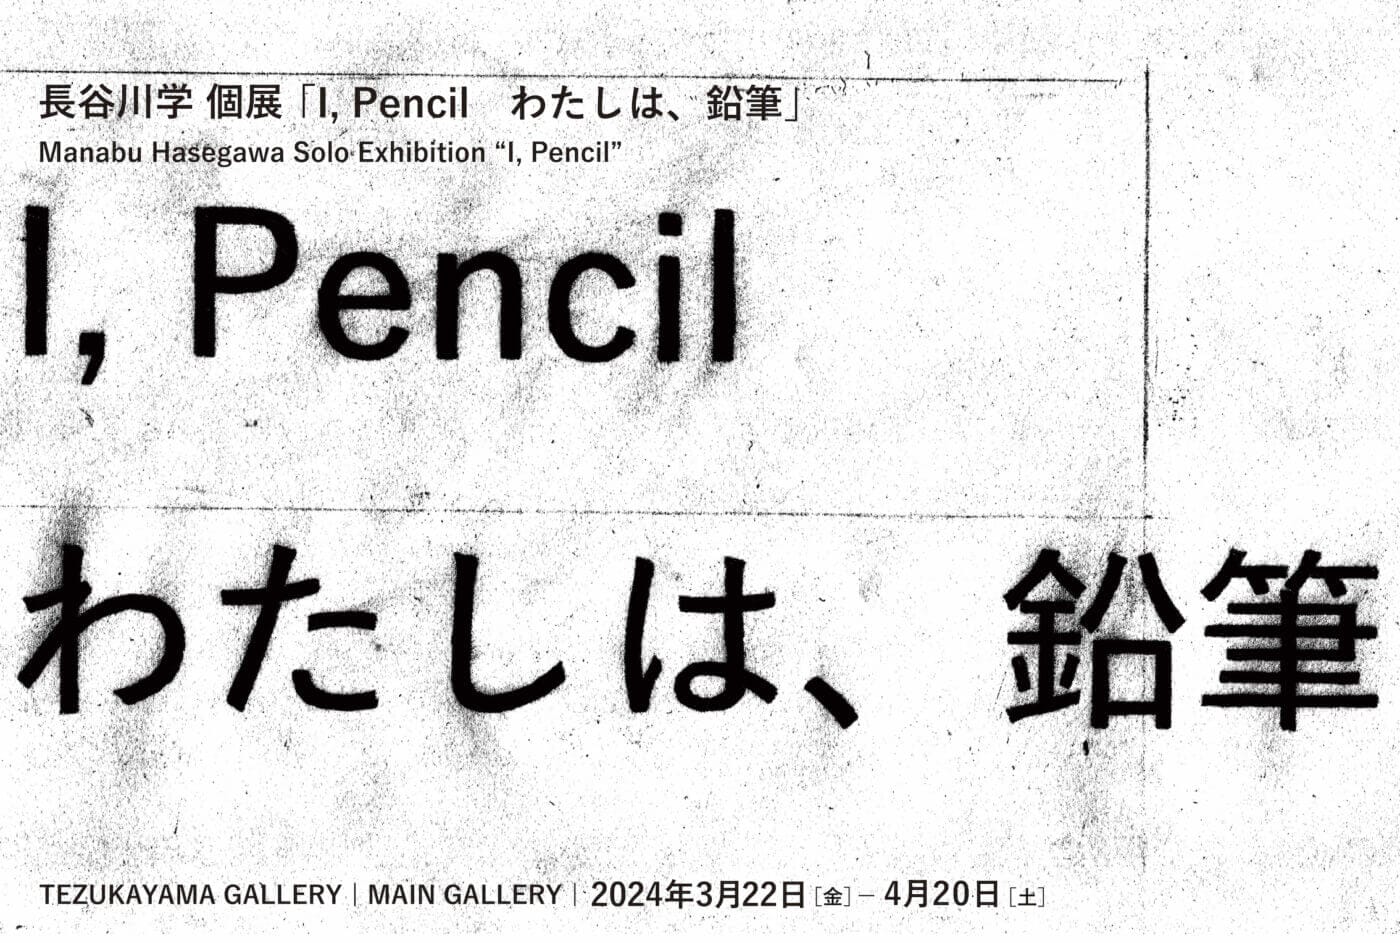 フロッタージュを応用した作品を制作している長谷川学の個展「I, Pencil  わたしは、鉛筆」、TEZUKAYAMA GALLERYにて3月22日から開催。武器をモチーフにした新作など。